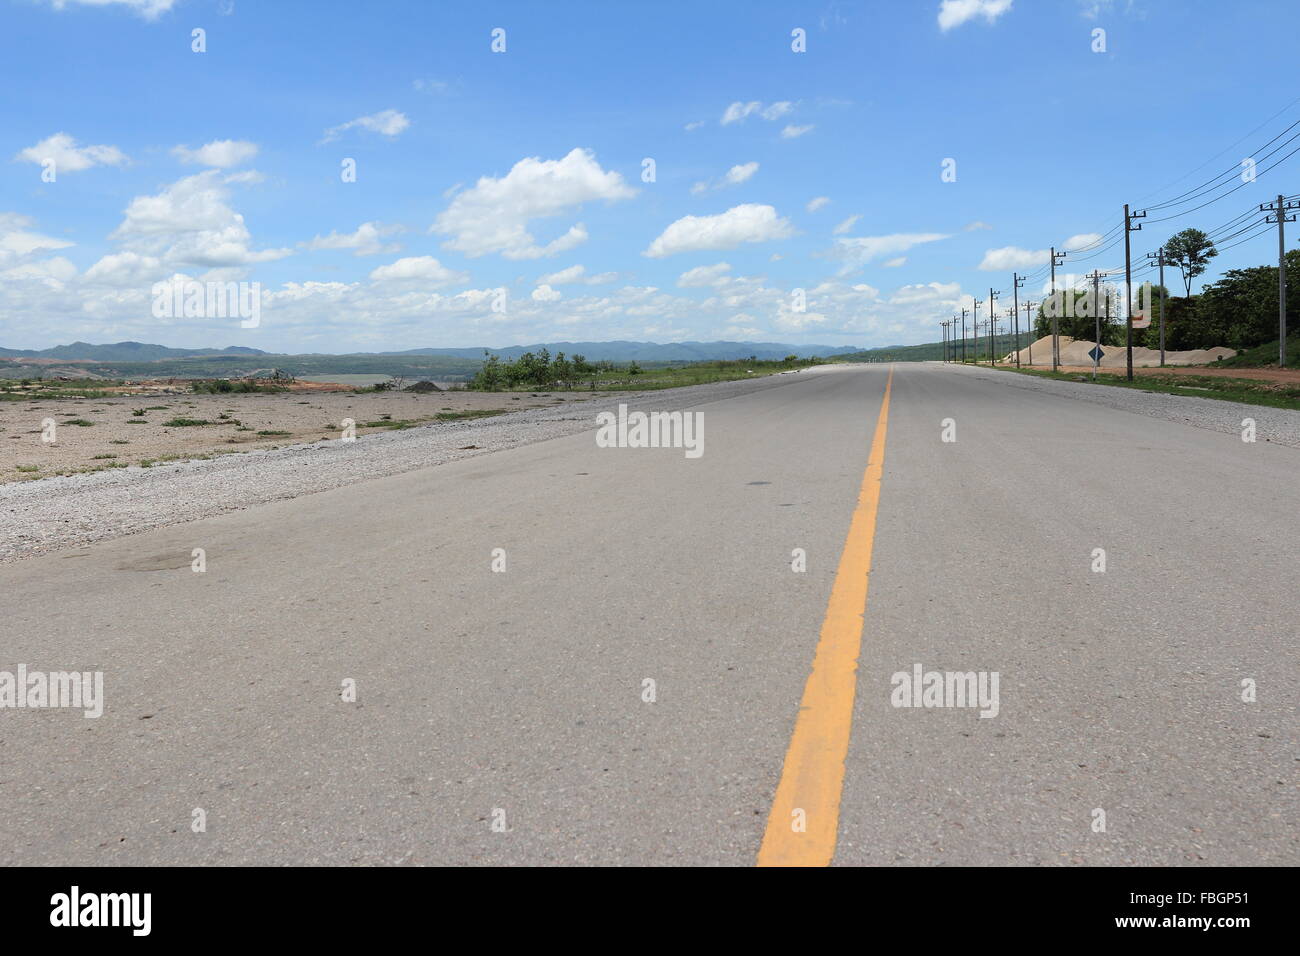 asphalt road against a blue sky Stock Photo